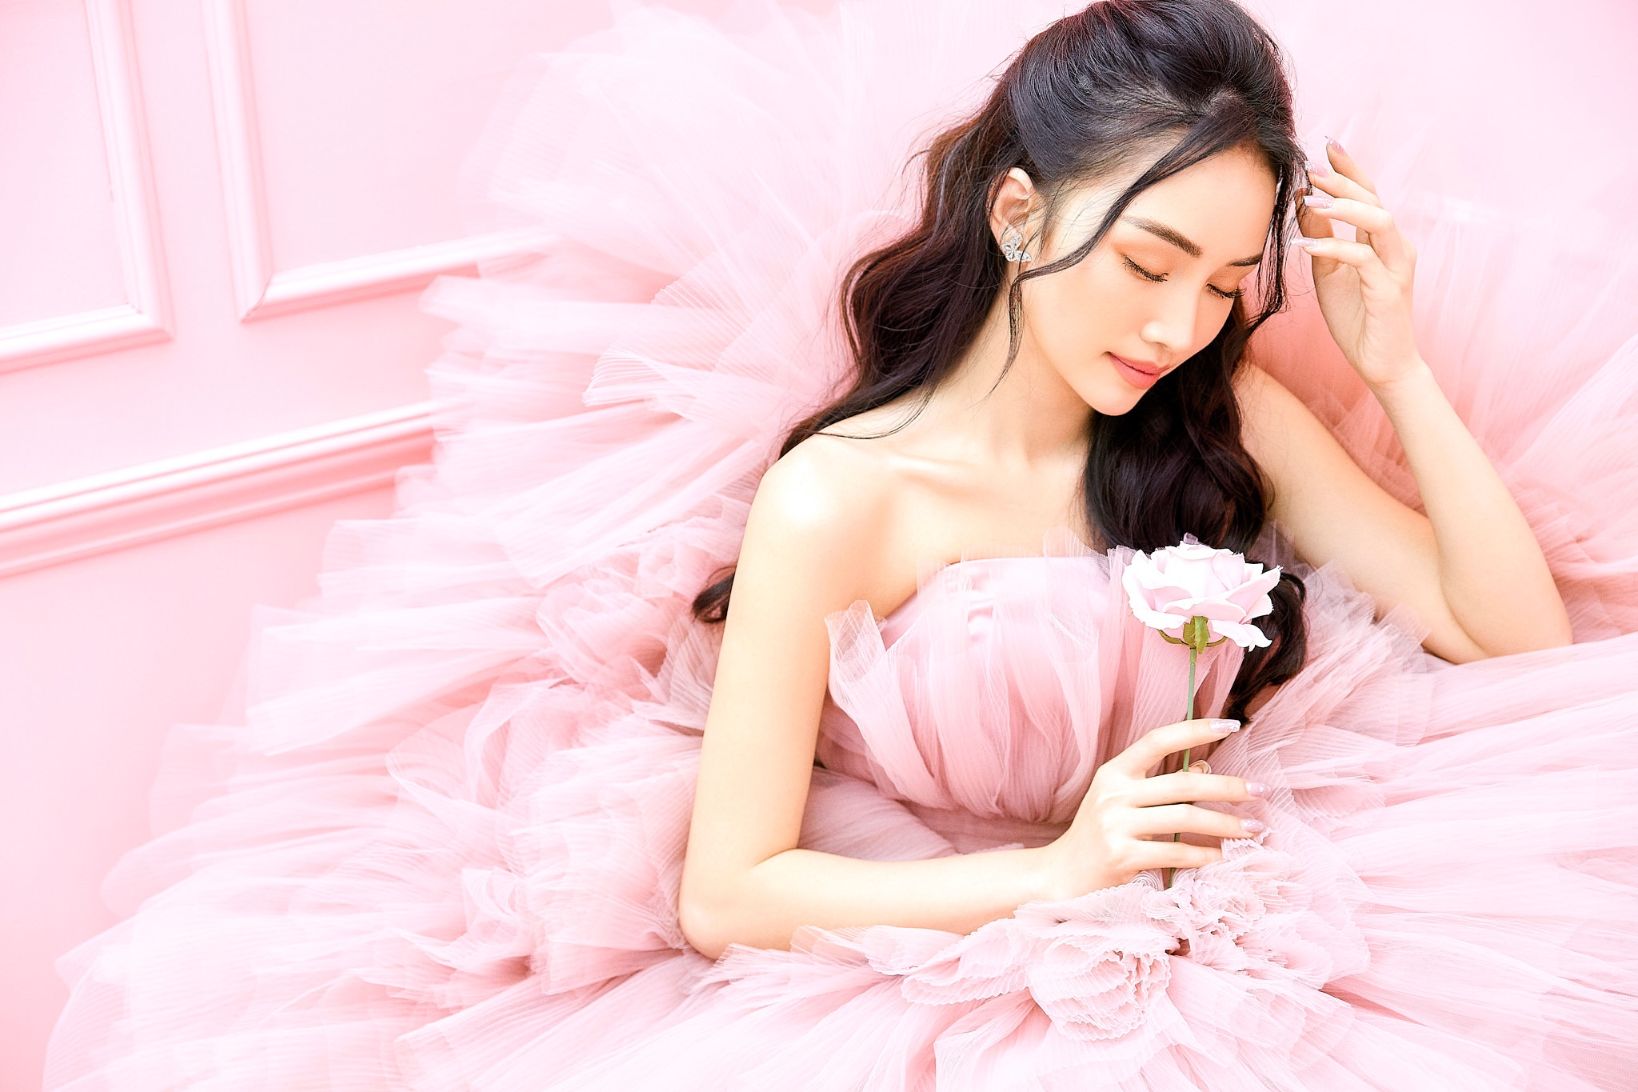 ha dan chi 3 Diễn viên, người mẫu Hà Đan Chi khiến fan bấn loạn bởi bộ hình mới đẹp như nàng thơ